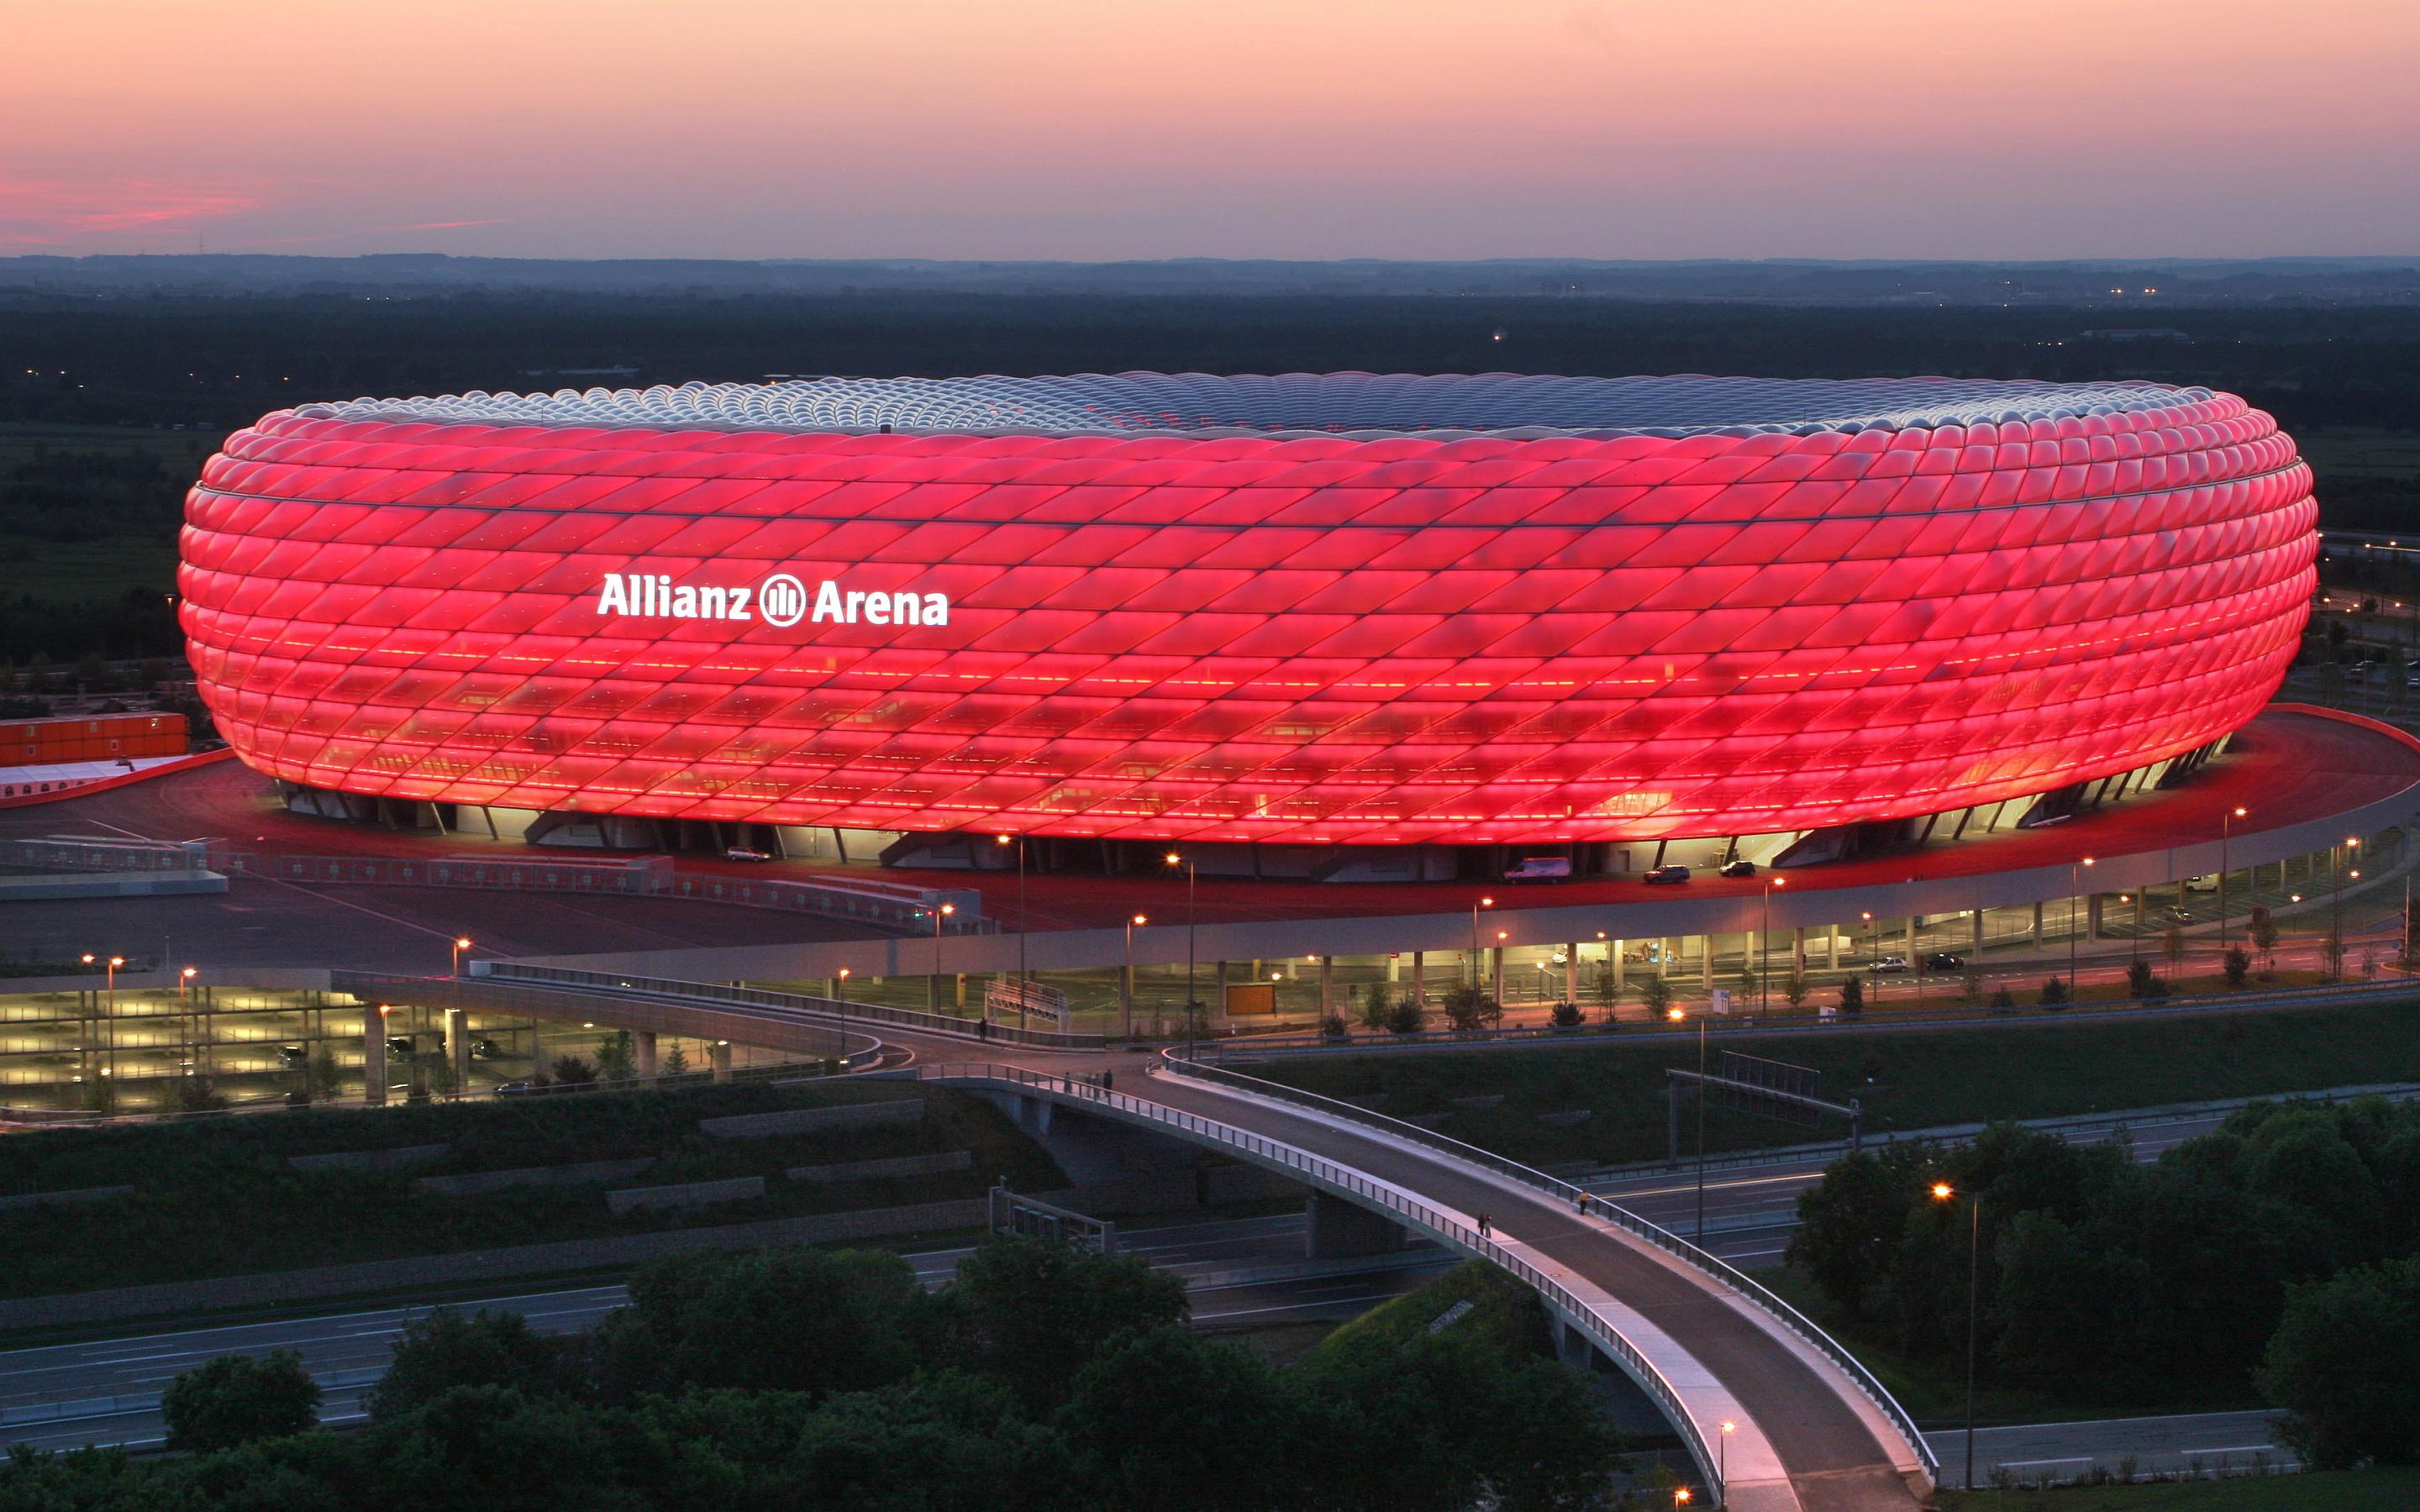 Nijemci mijenjaju ime stadiona tokom trajanja Eura